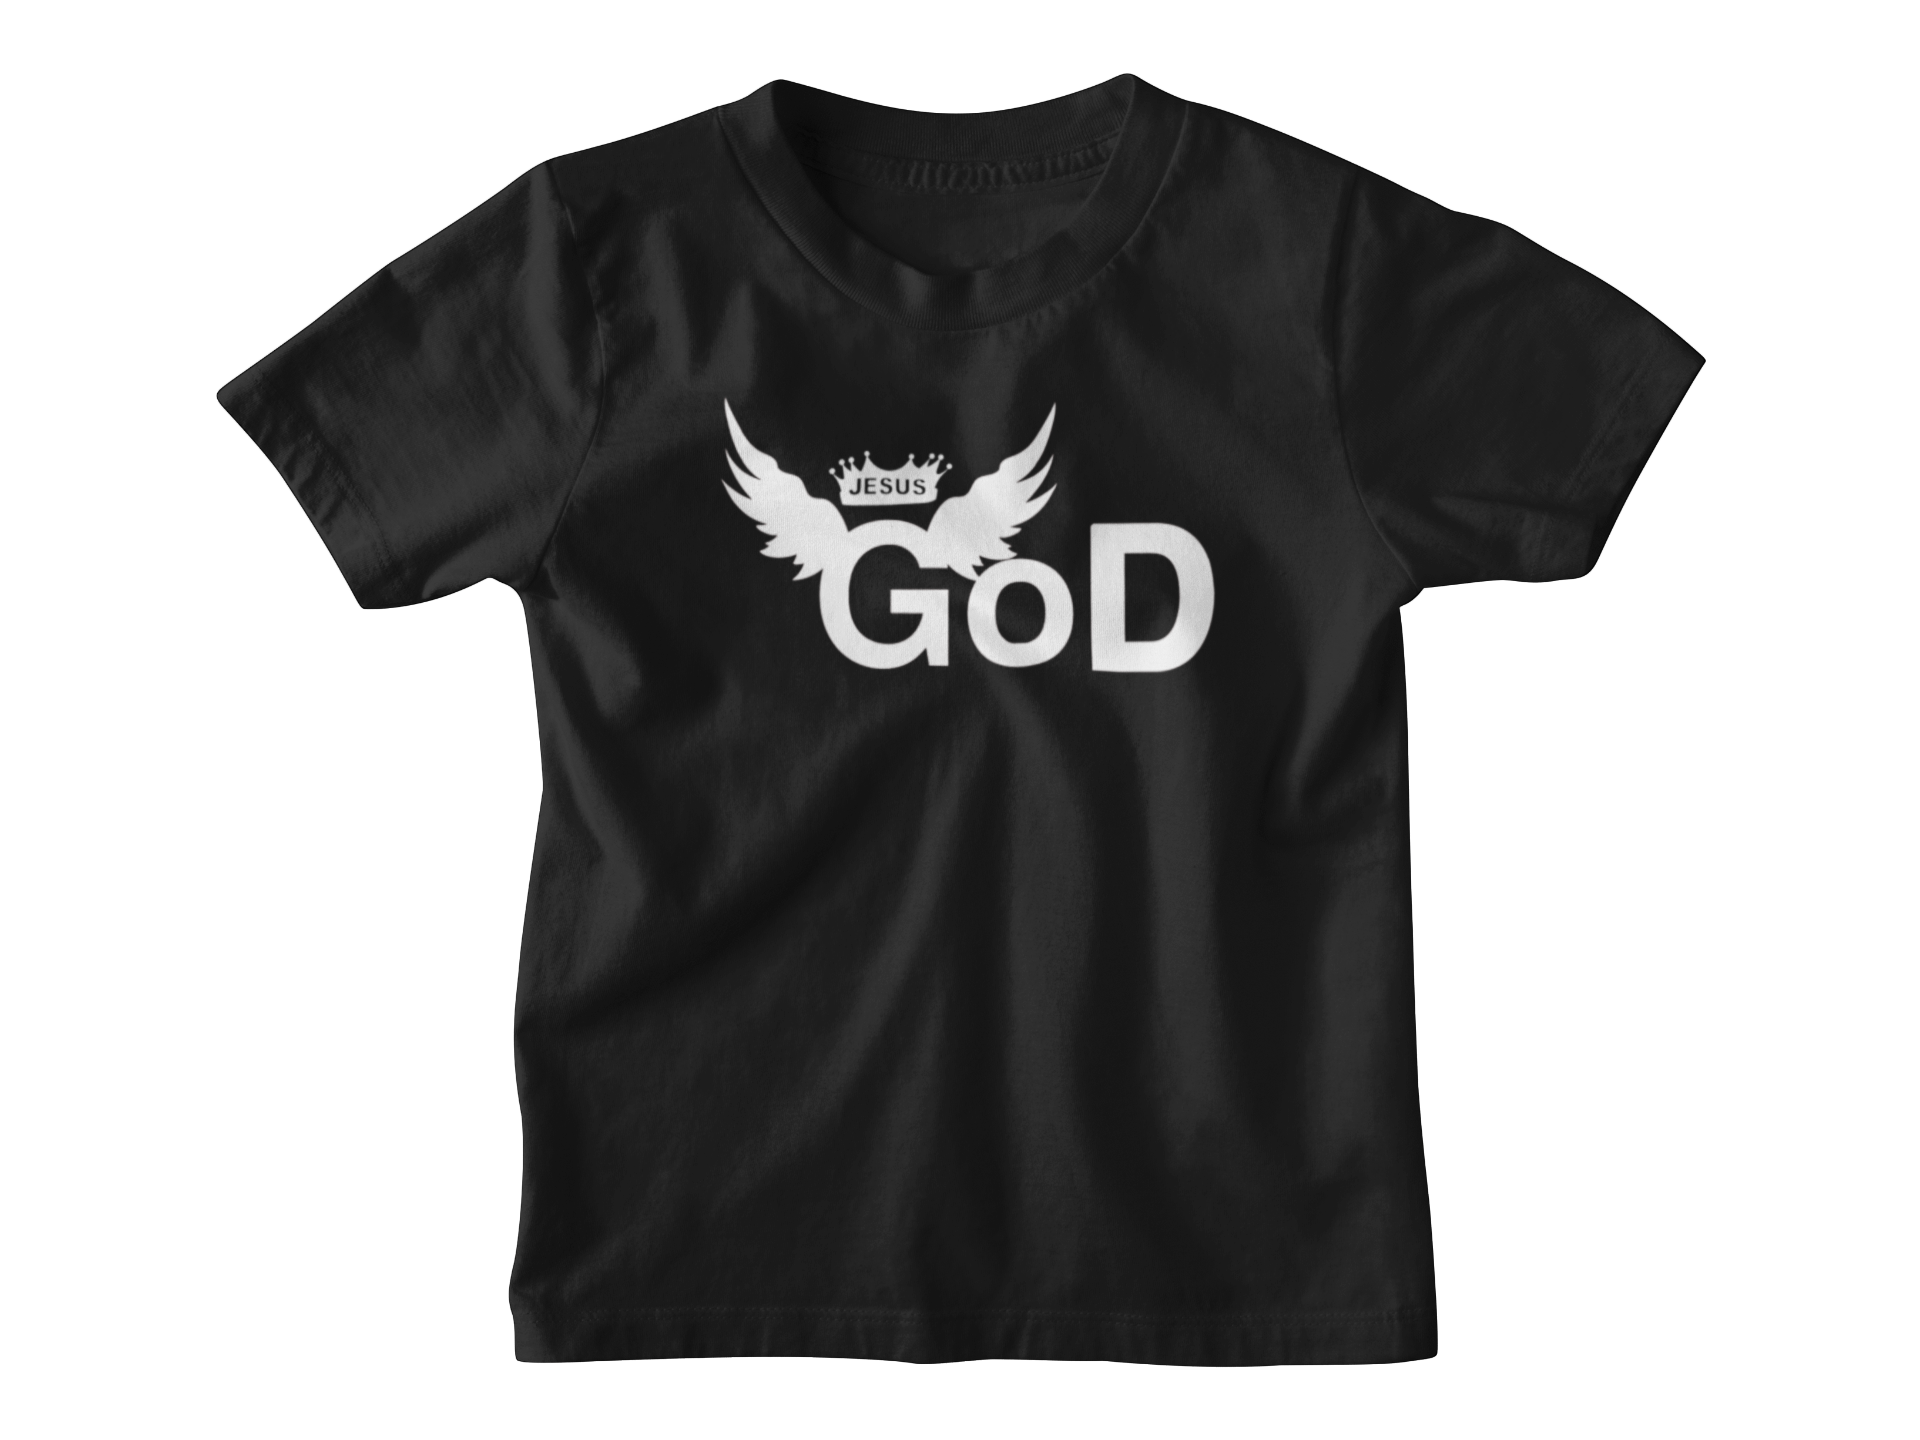 Kids God Logo Shirt